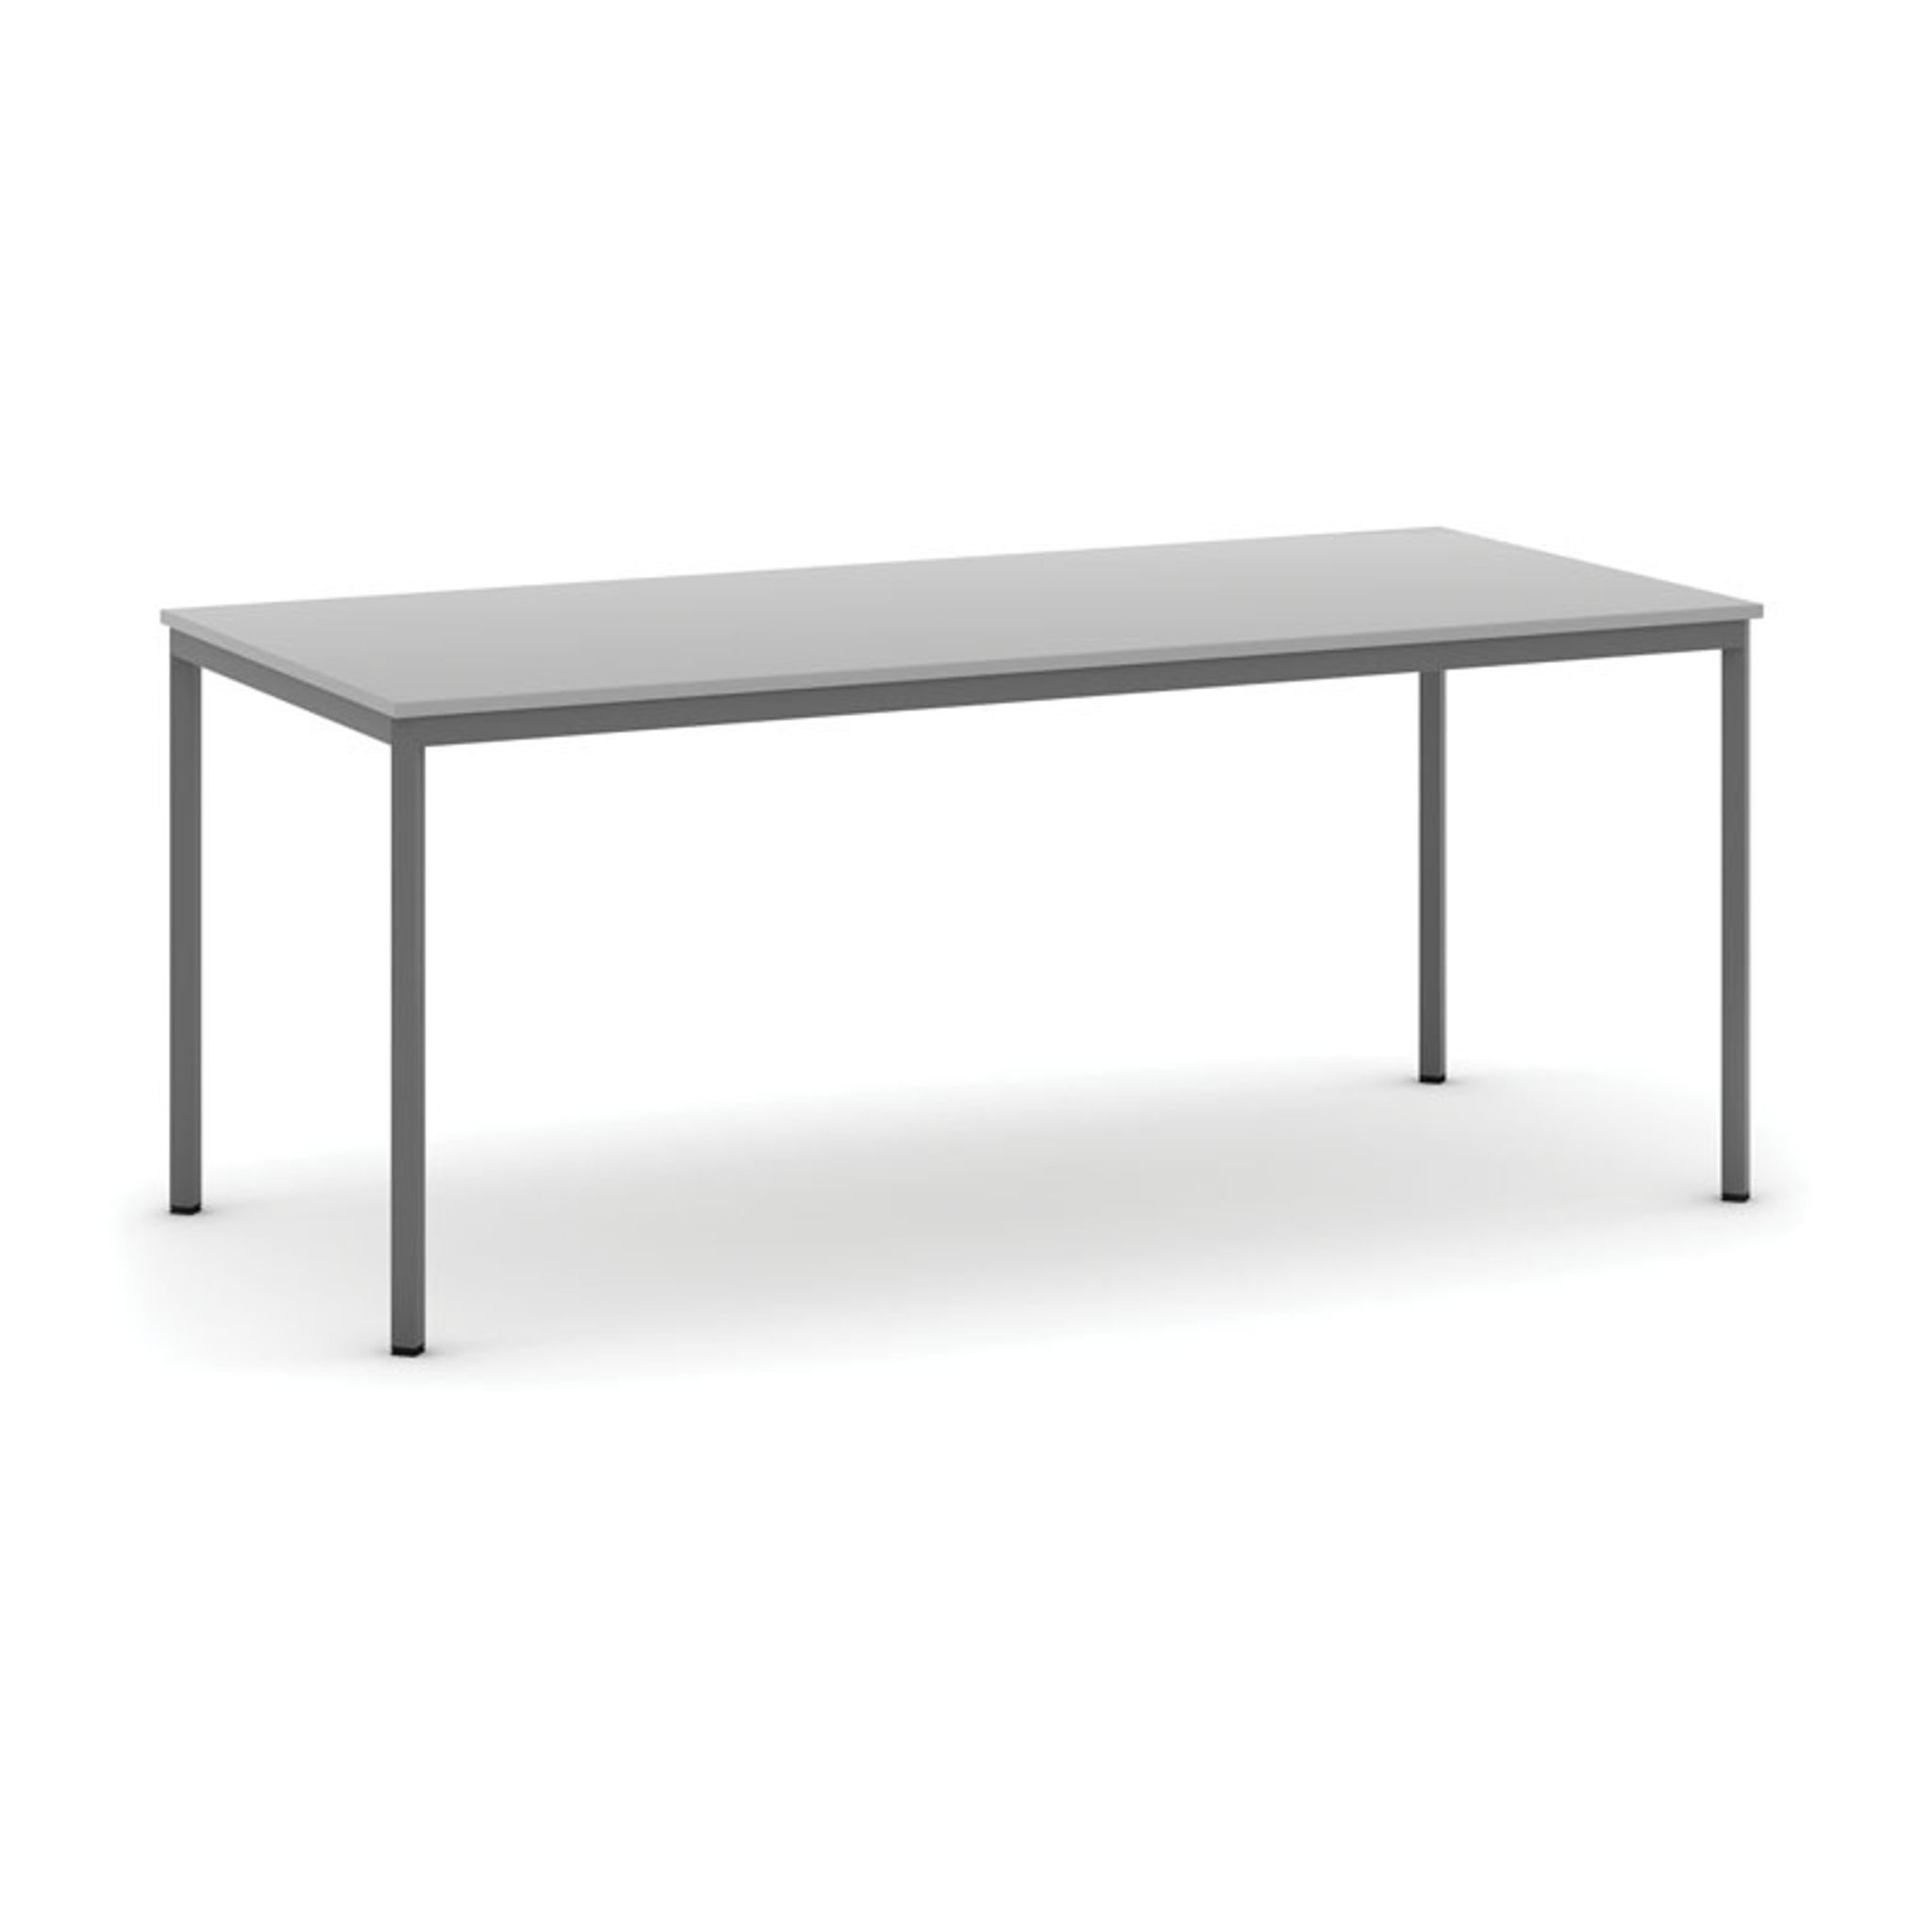 Esstisch, 1800 x 800 mm, Platte grau, Tischgestell dunkelgrau